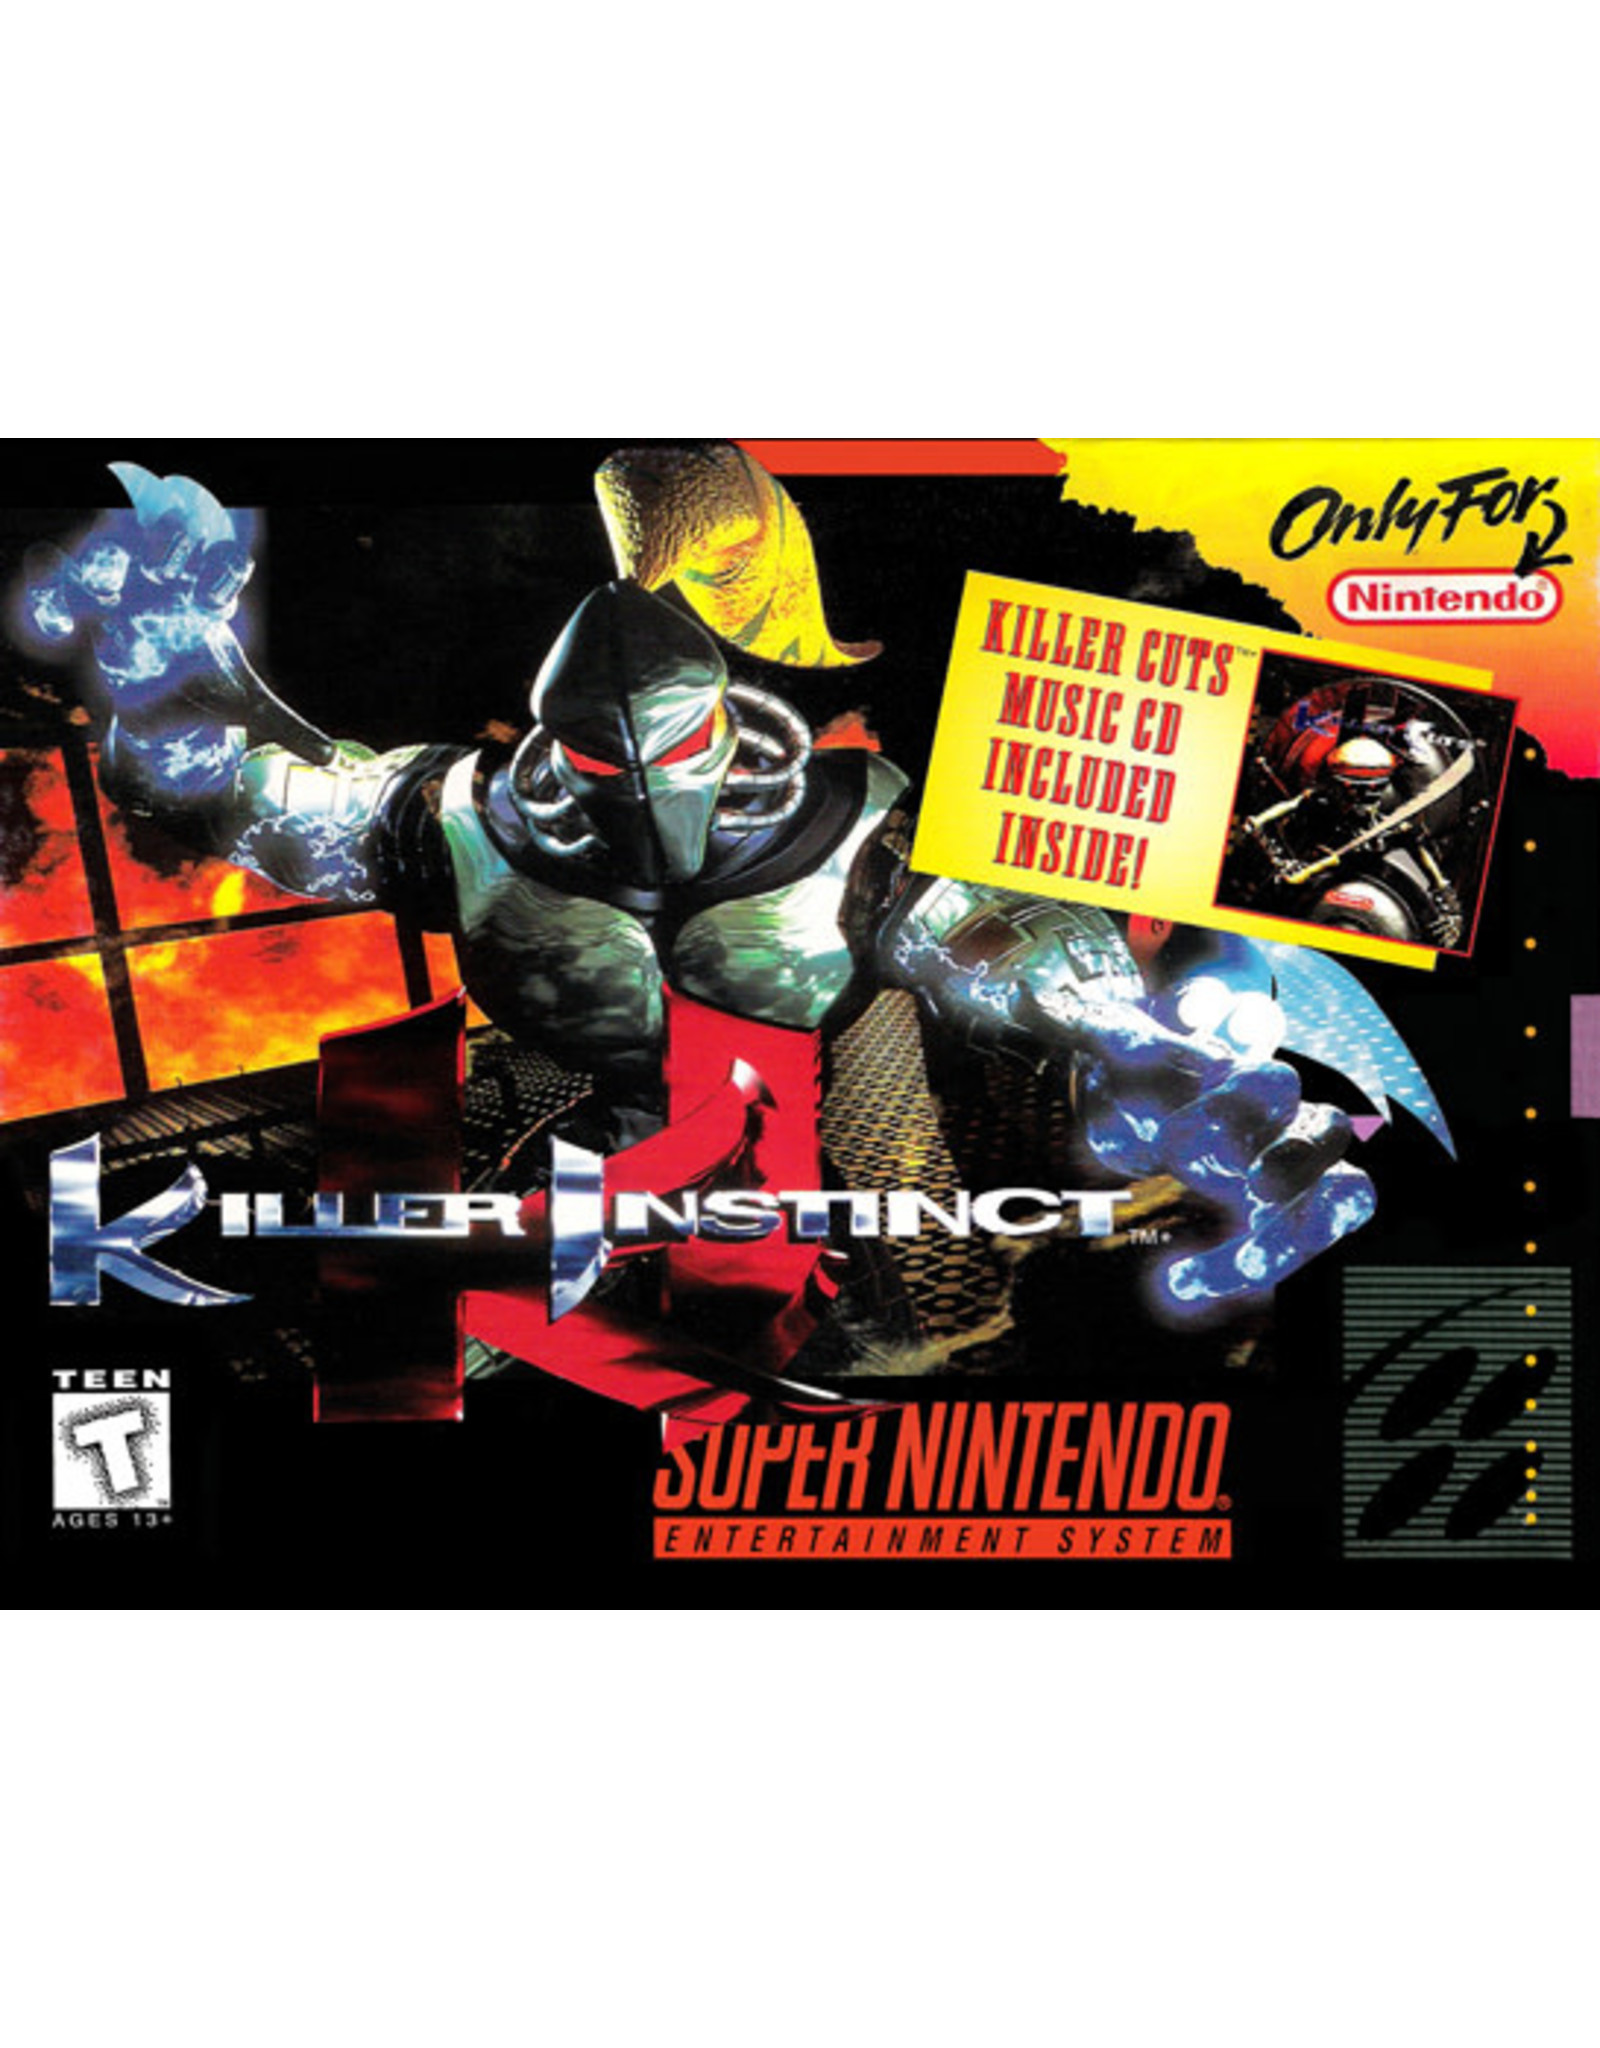 Super Nintendo Killer Instinct (Cart Only)